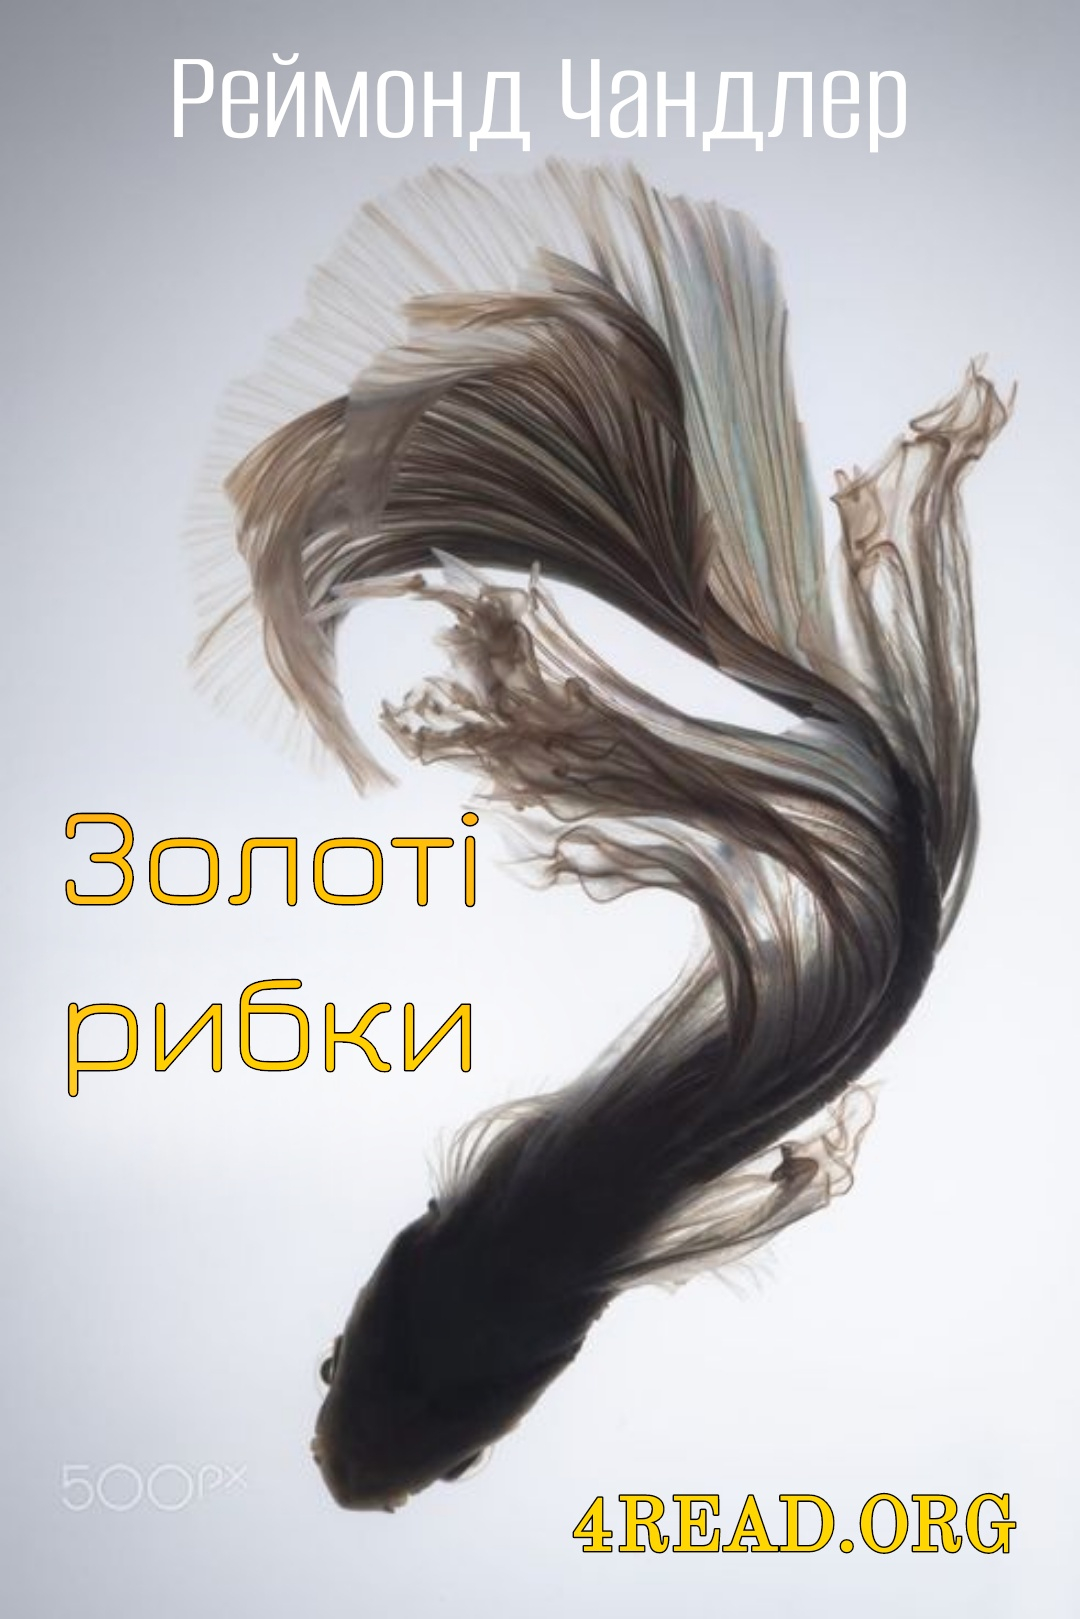 Золоті рибки - Реймонд Чандлер - Слухати Книги Українською Онлайн Безкоштовно 📘 Knigi-Audio.com/uk/